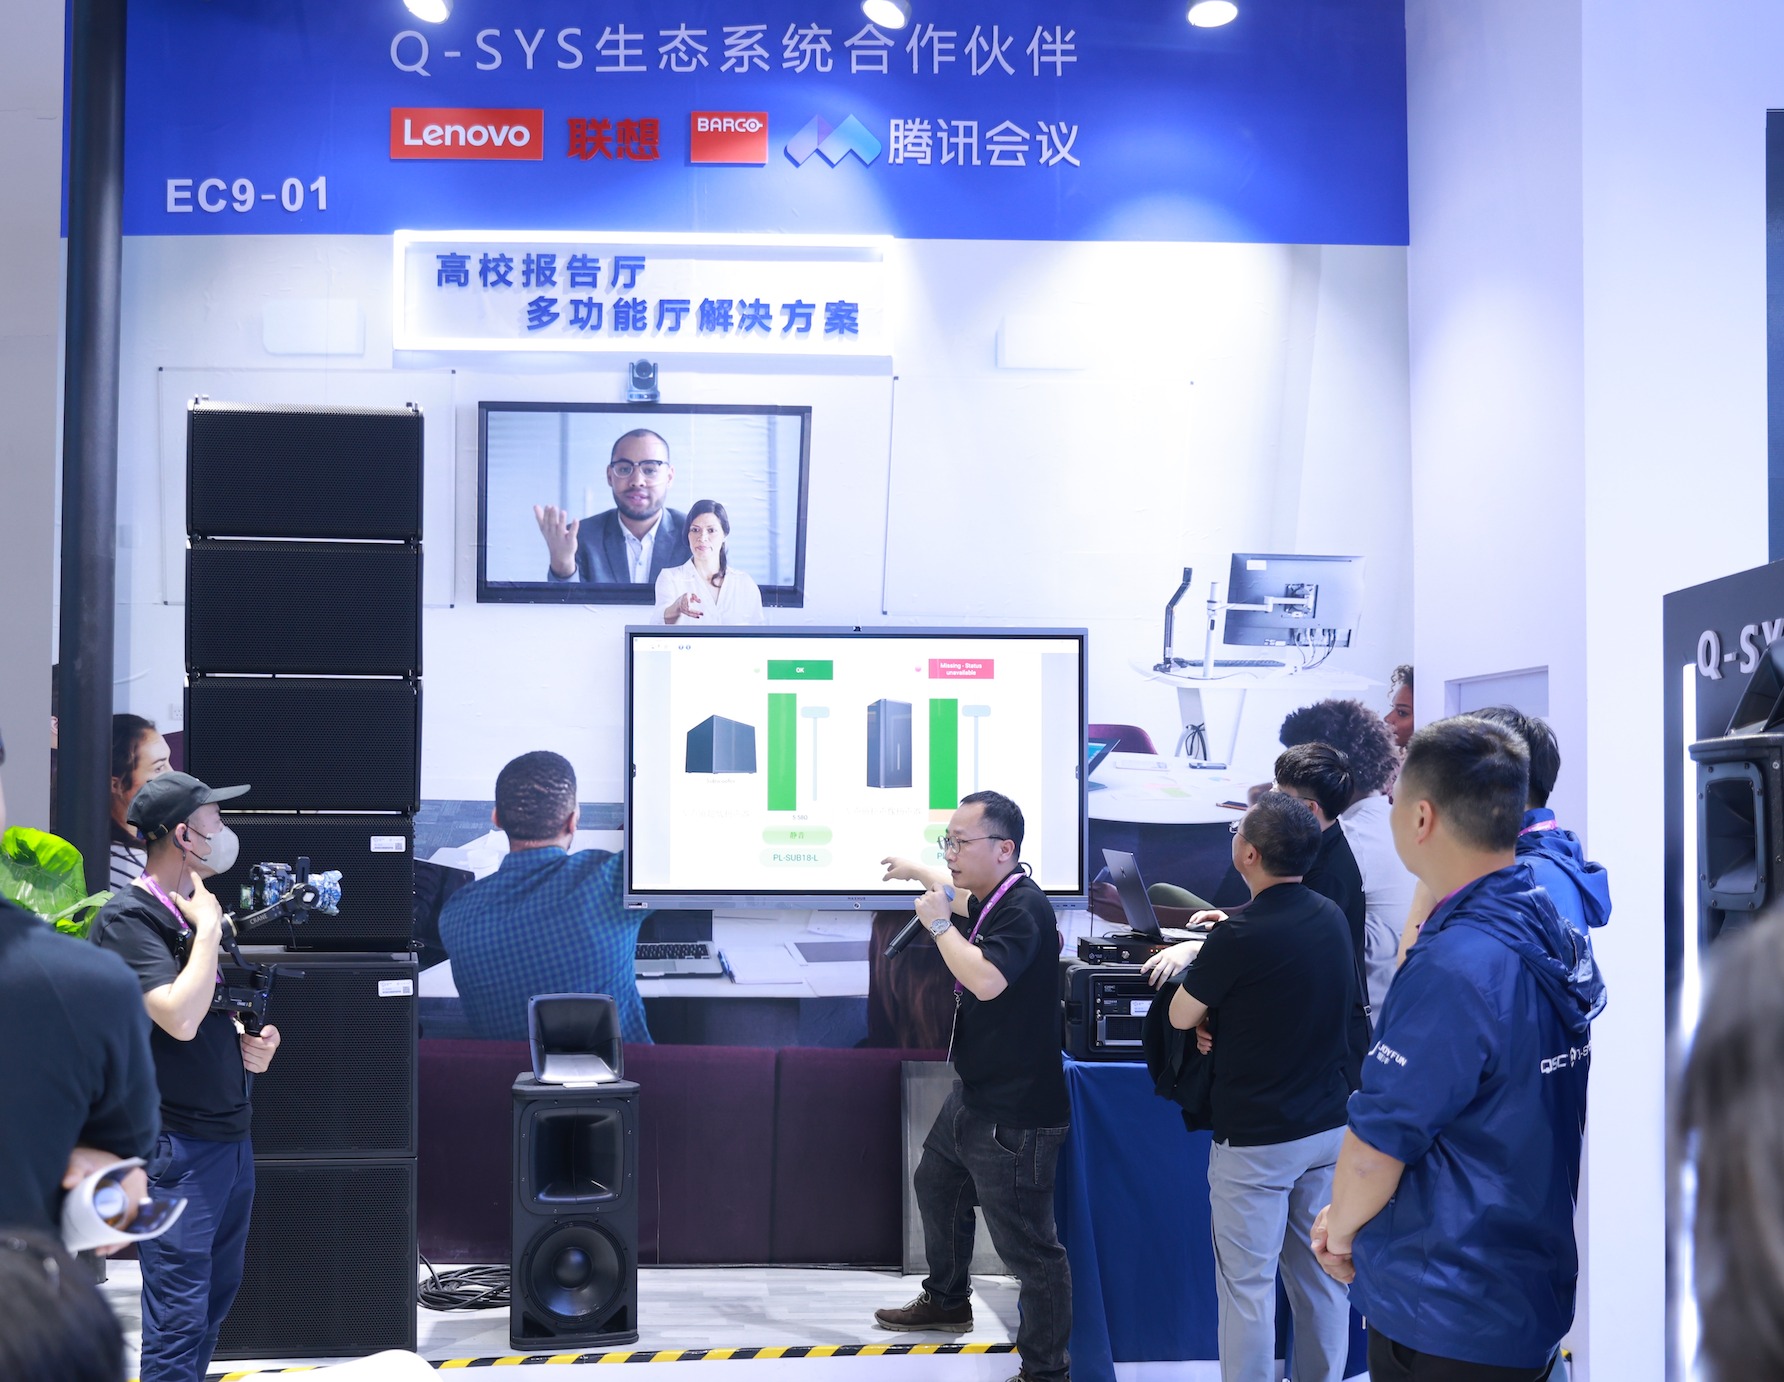 Q-SYS桥思AI+技术首秀InfoCommChina，提升智能化会议独特视听体验新高度